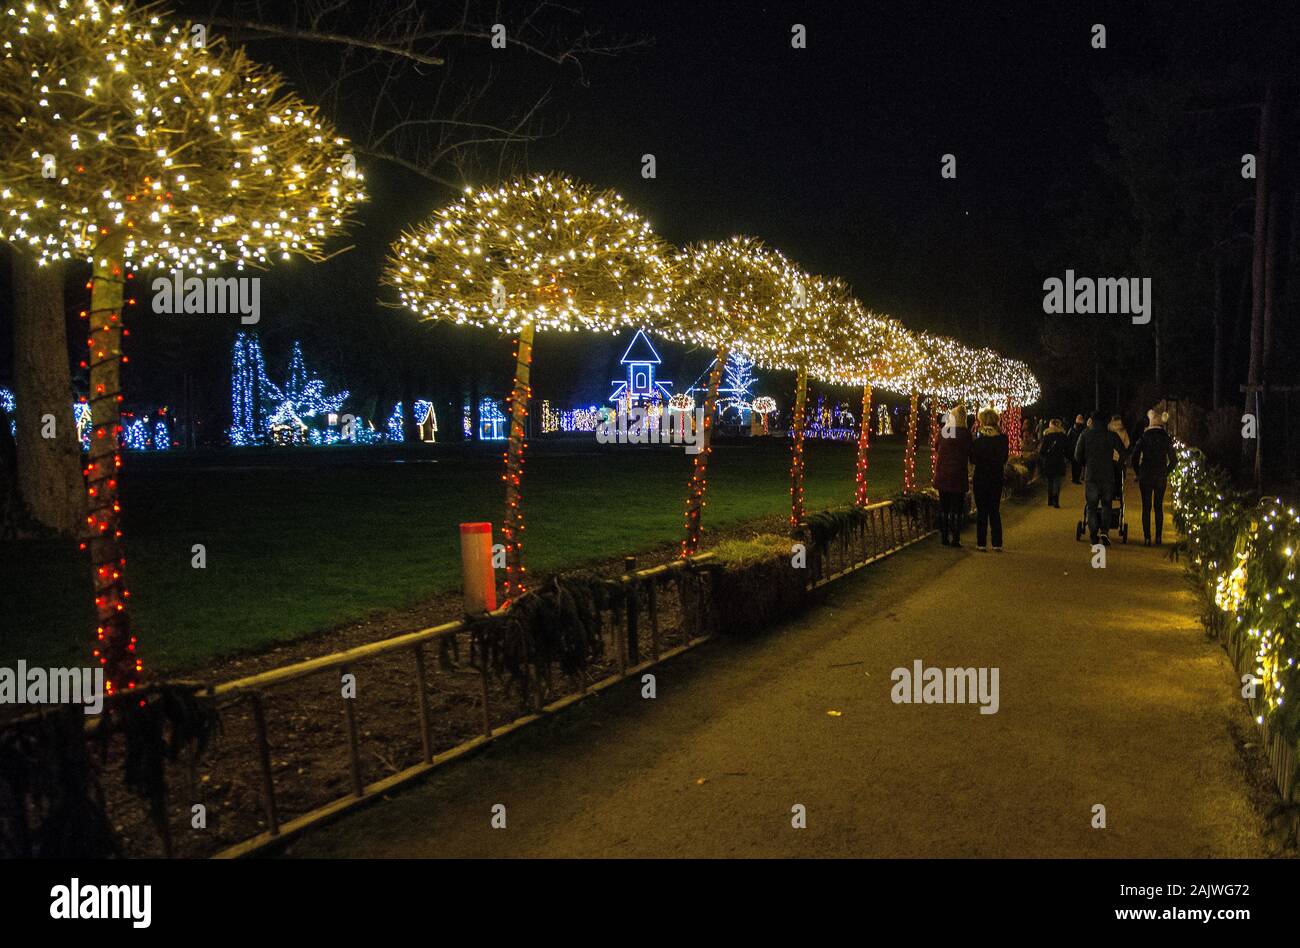 MOZIRJE PARK, Slowenien - Dezember 28., 2019: Weihnachten Mozirje Mozirje Park in der Stadt während der Adventszeit und Feiertage im Dezember eingerichtet. Stockfoto